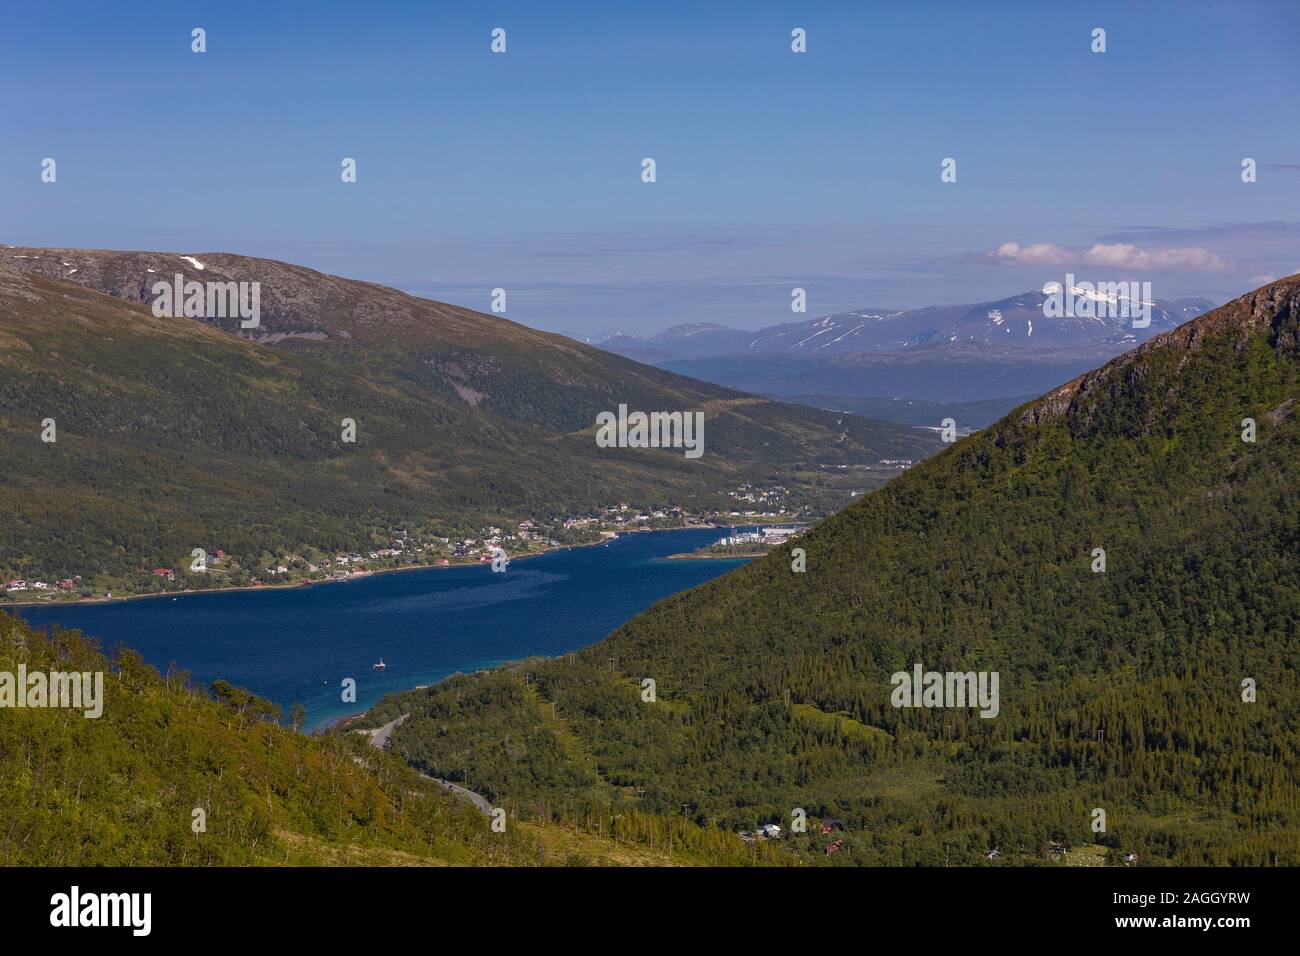 L'ÎLE DE KVALØYA, comté de Troms, NORVÈGE - Kaldfjorden fjord et paysage de montagne dans le nord de la Norvège. Banque D'Images